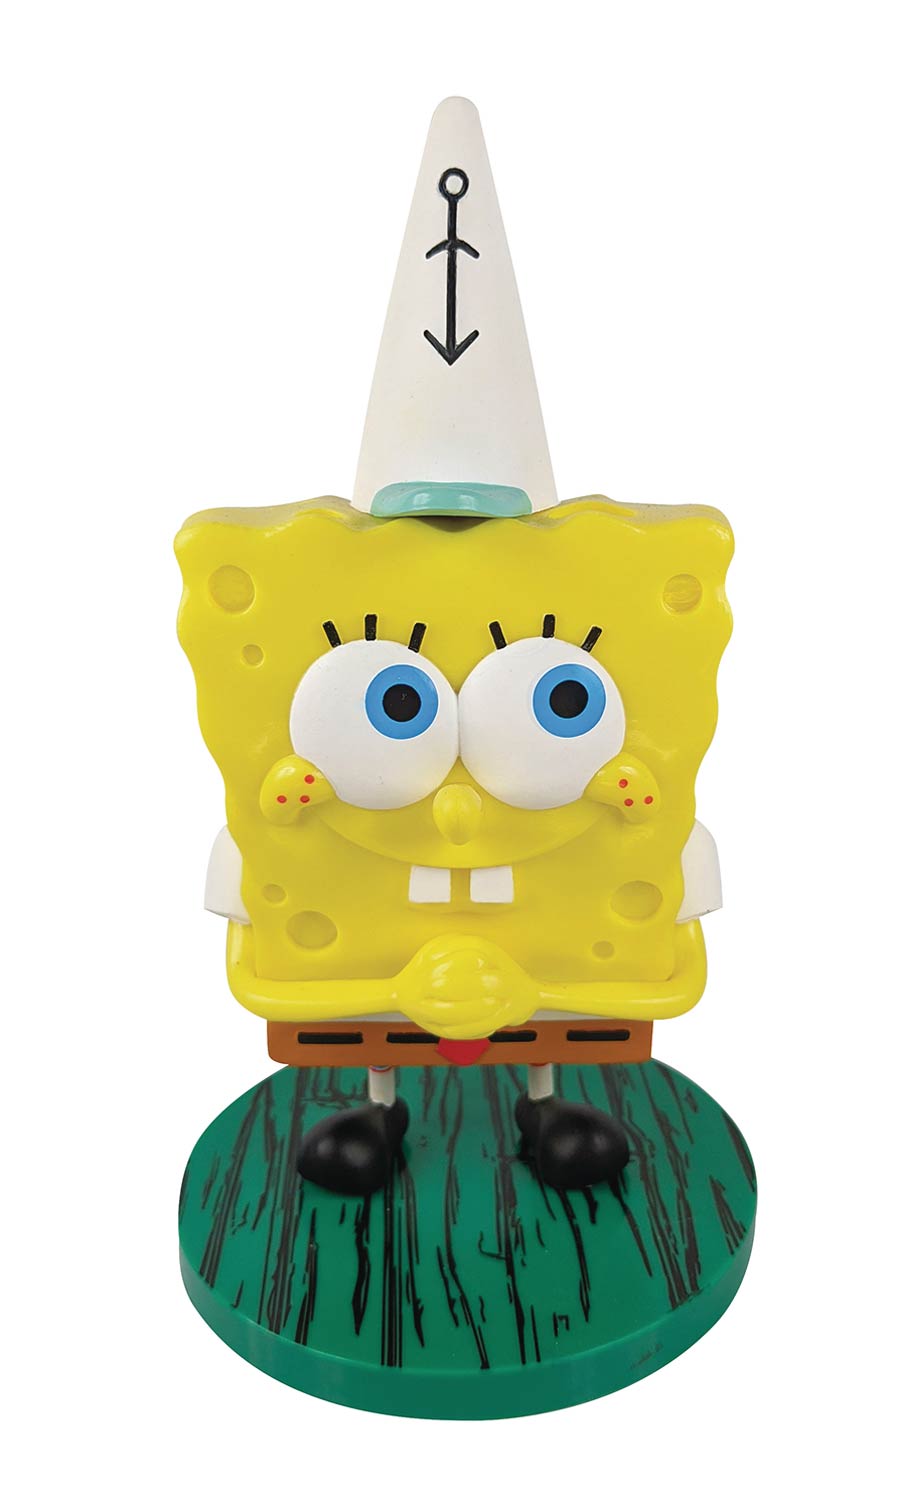 Nickelodeon SpongeBob SquarePants Gnerd Garden Gnome Vinyl Figure - SpongeBob